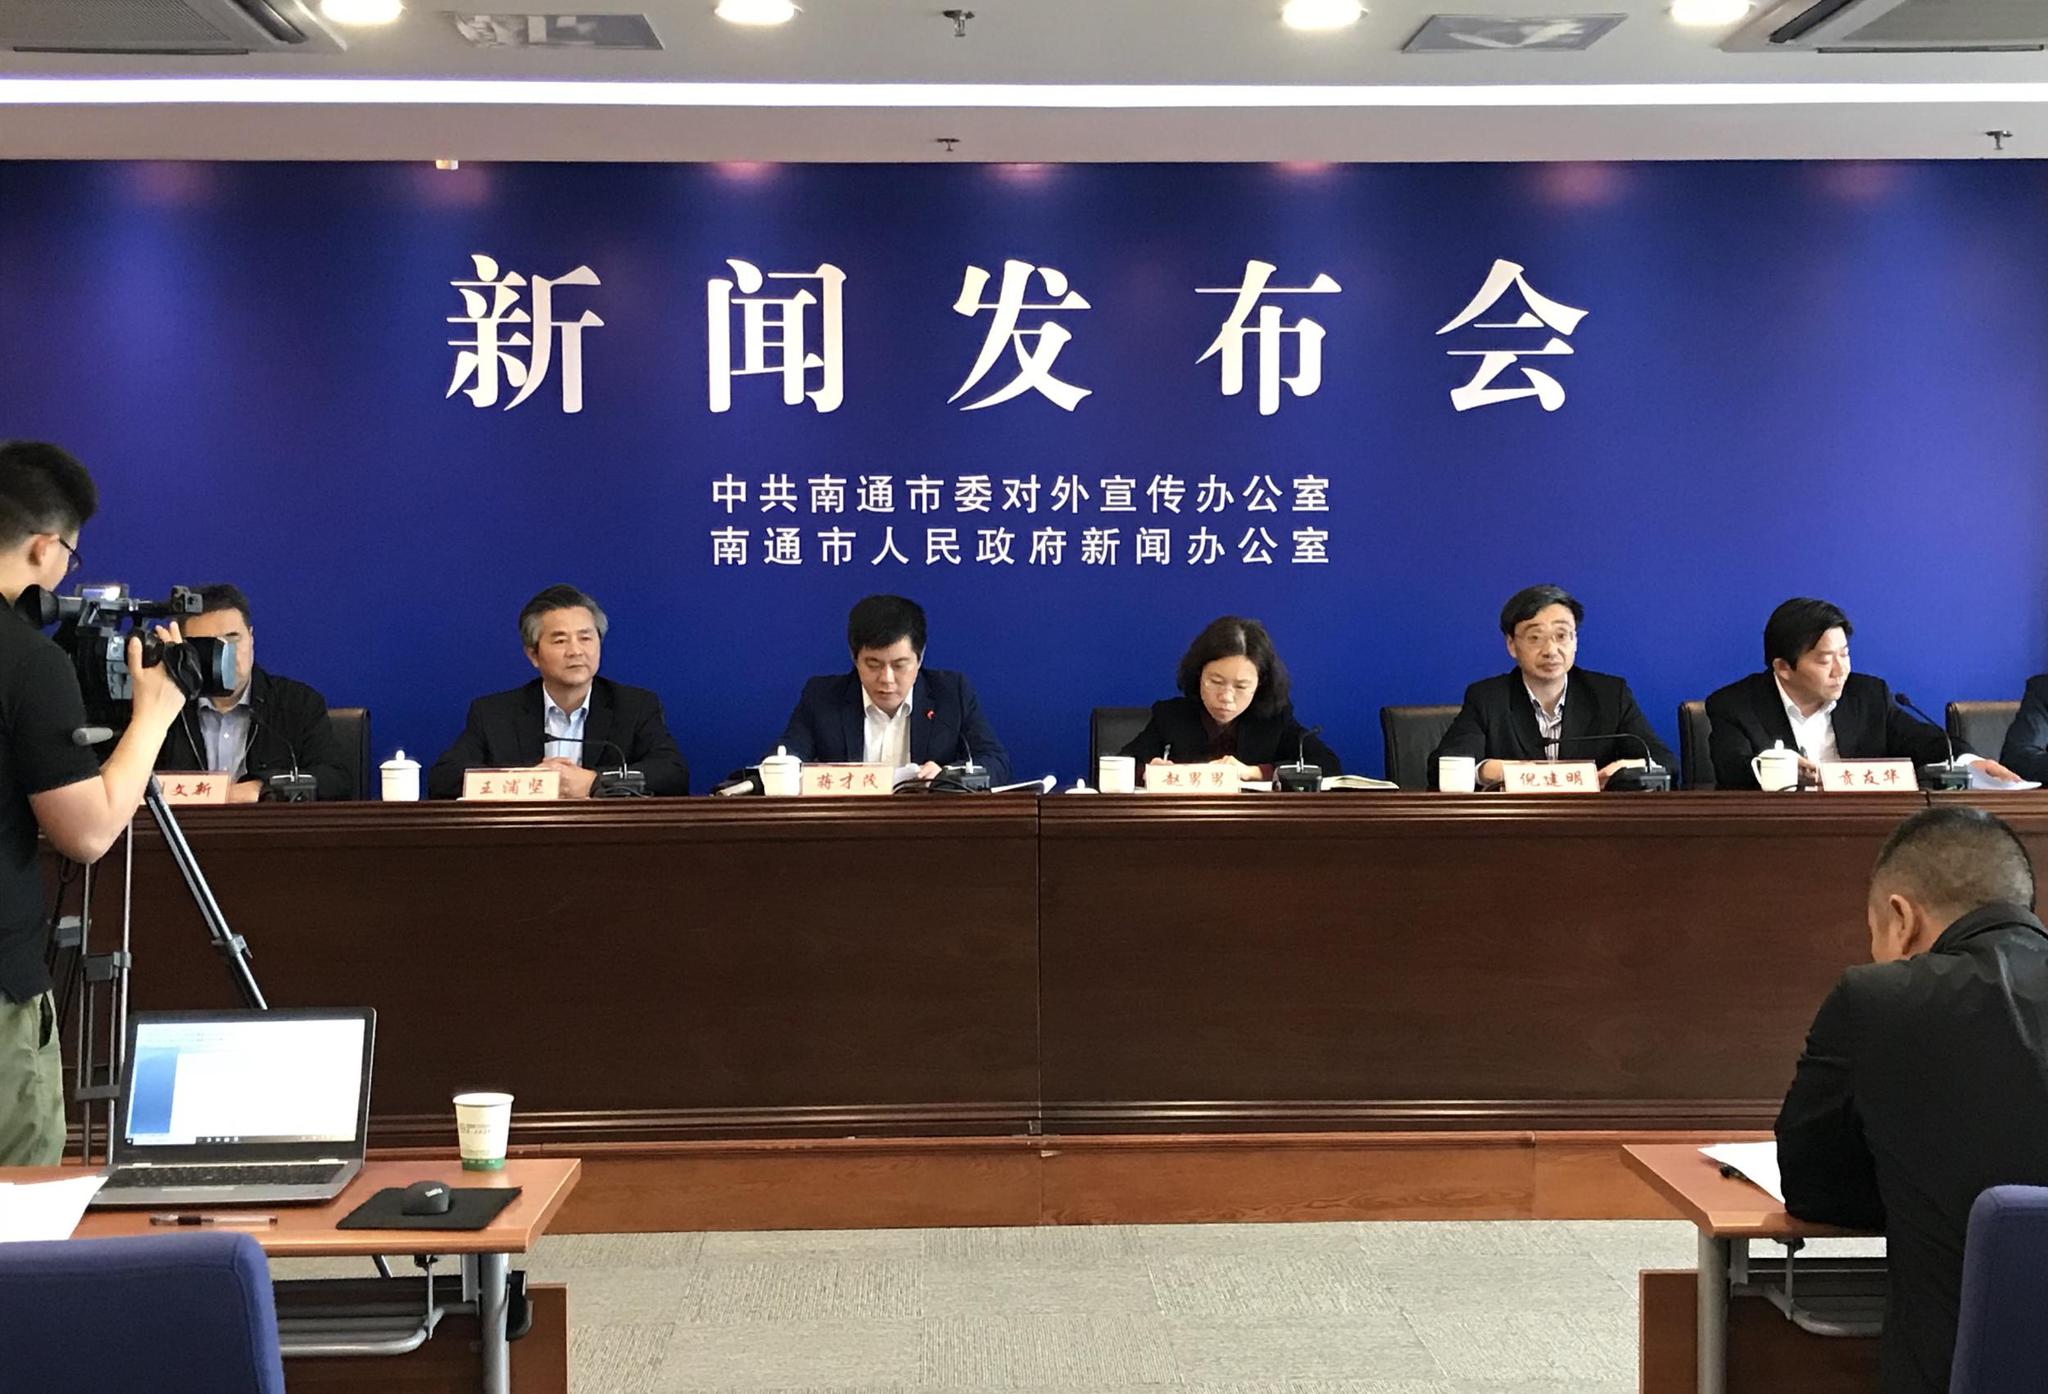 2018中国南通江海国际博览会5月20日开幕 将